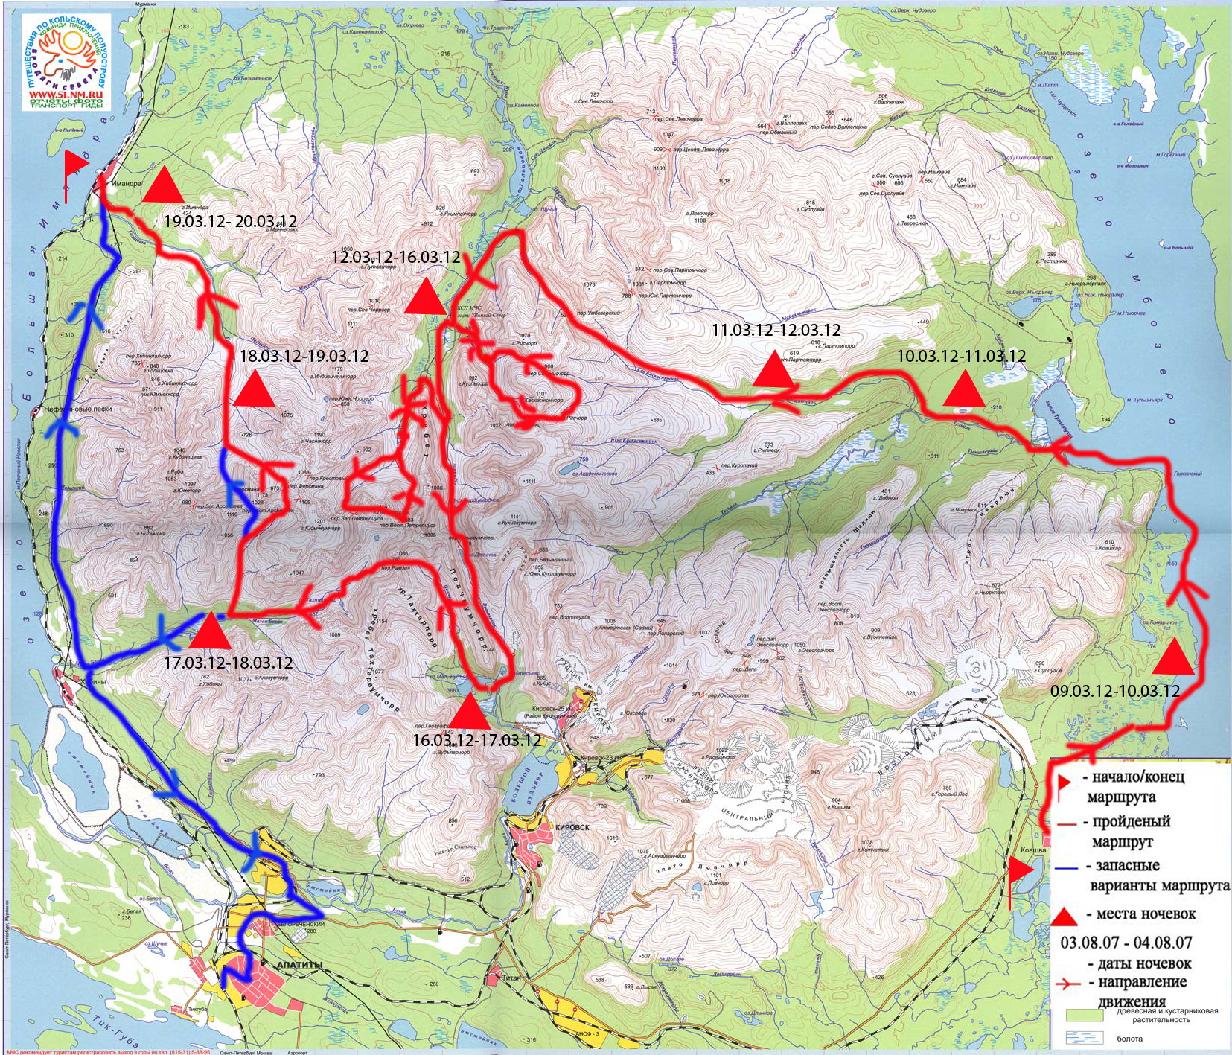 Отчет о лыжном туристском спортивном походе  3  категории сложности  по Кольскому п-ову, Хибинские тундры